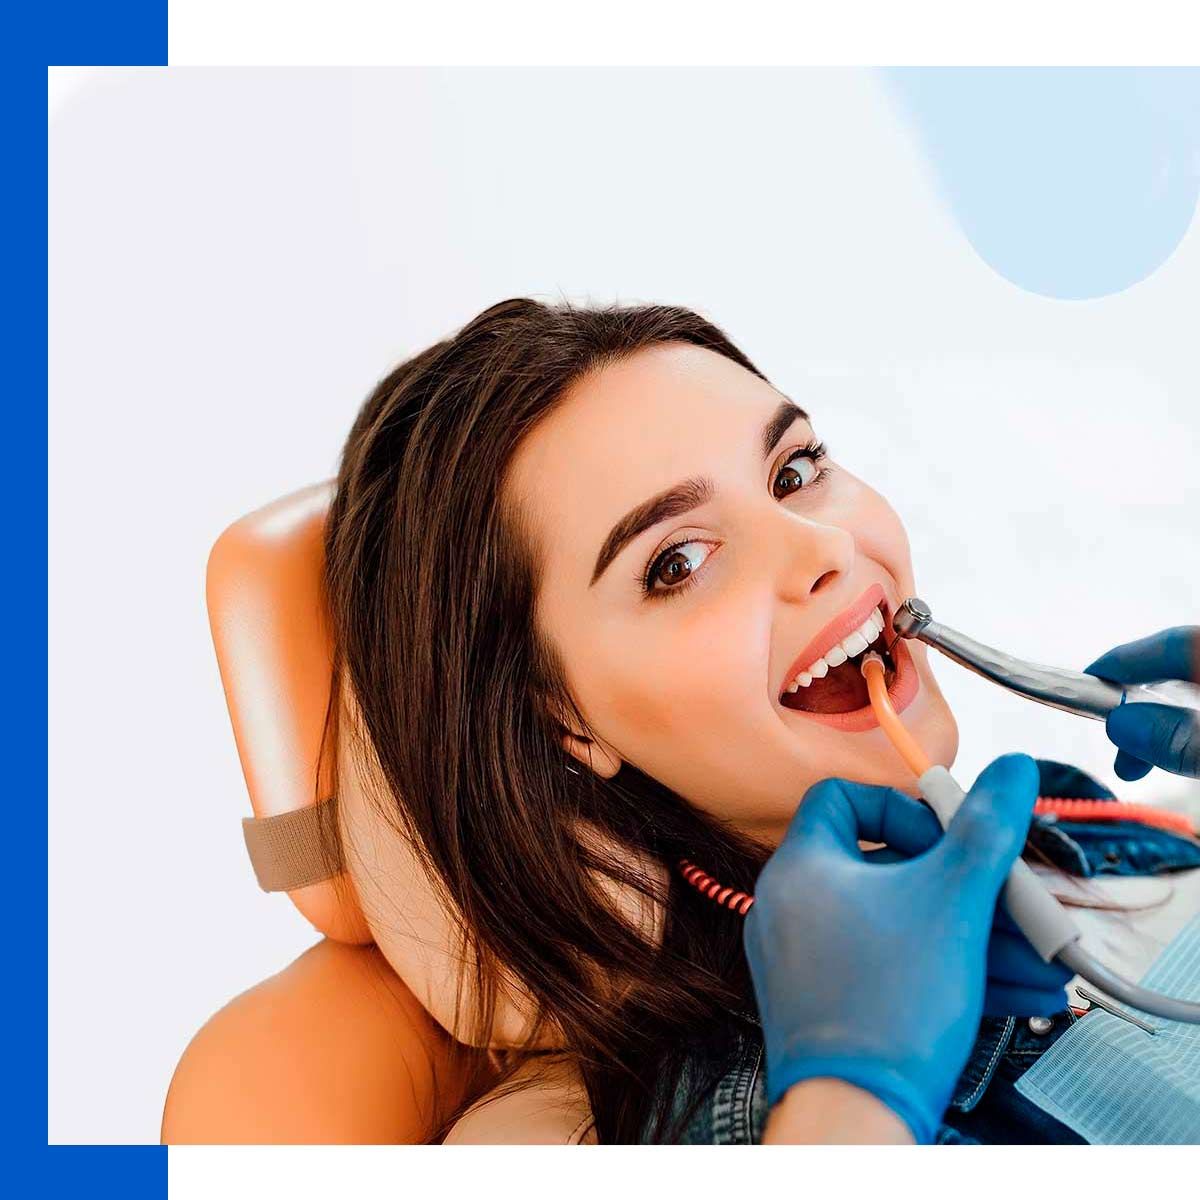 Clínica Dental Urresti mujer en tratamiento odontológico 